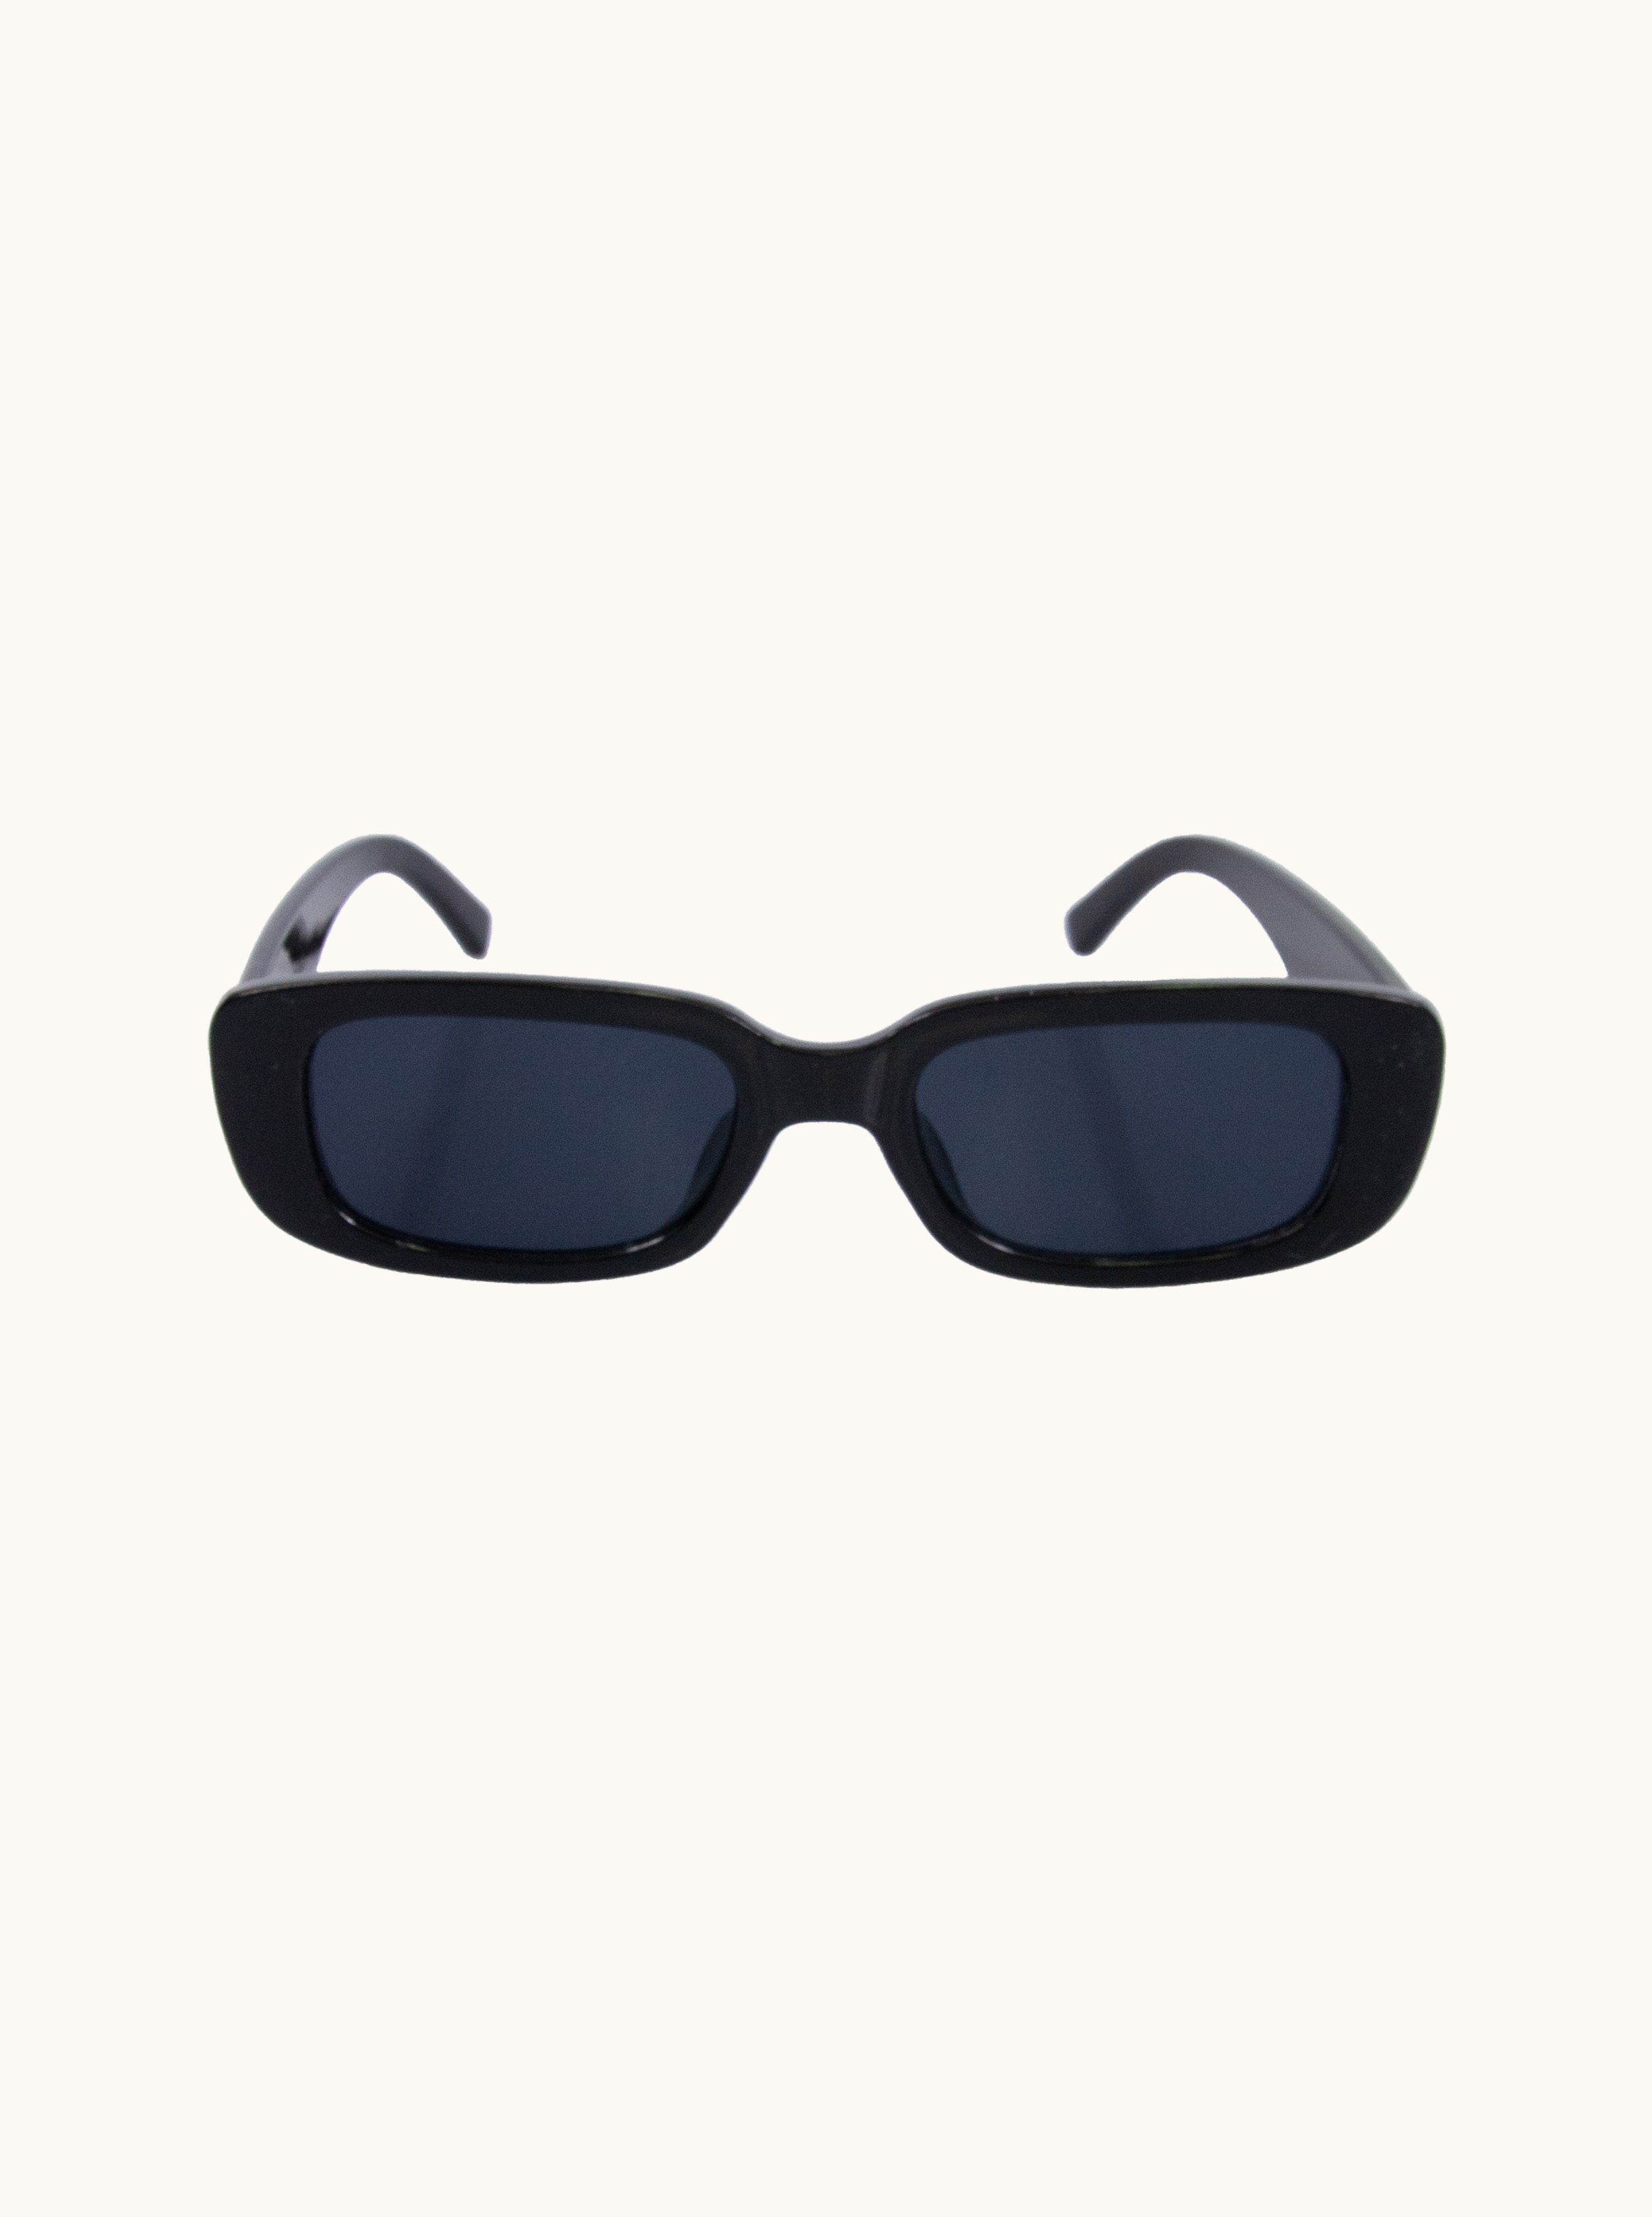 Prostokątne czarne okulary przeciwsłoneczne - Brylove zdjęcie 1